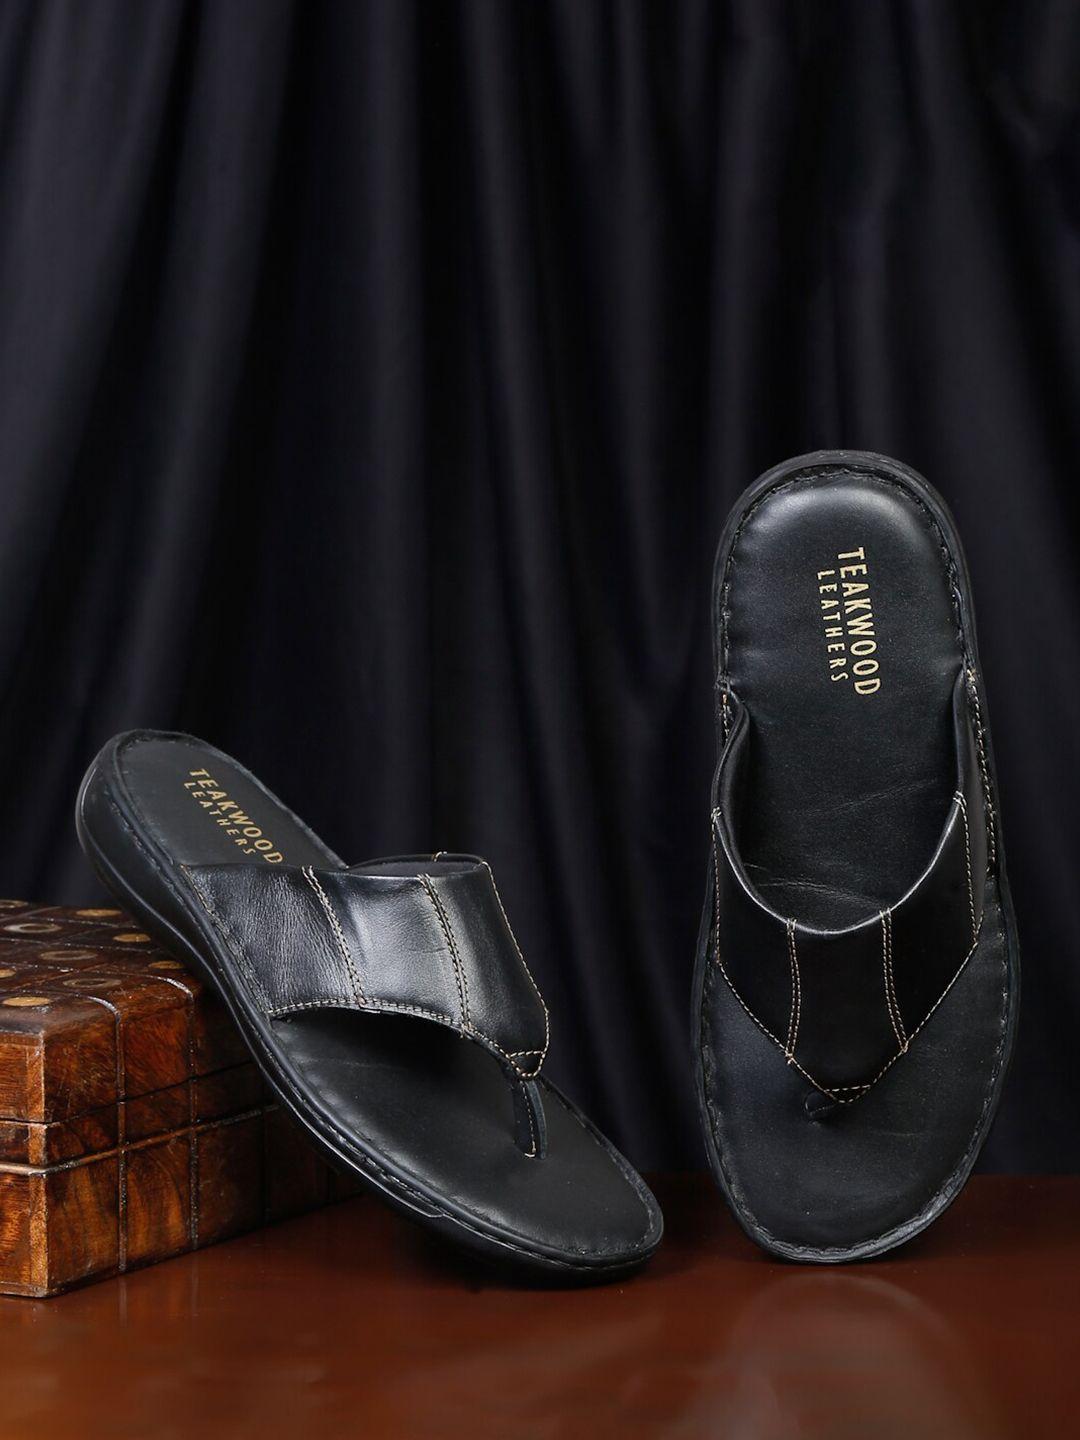 teakwood leathers men slip on leather comfort sandals